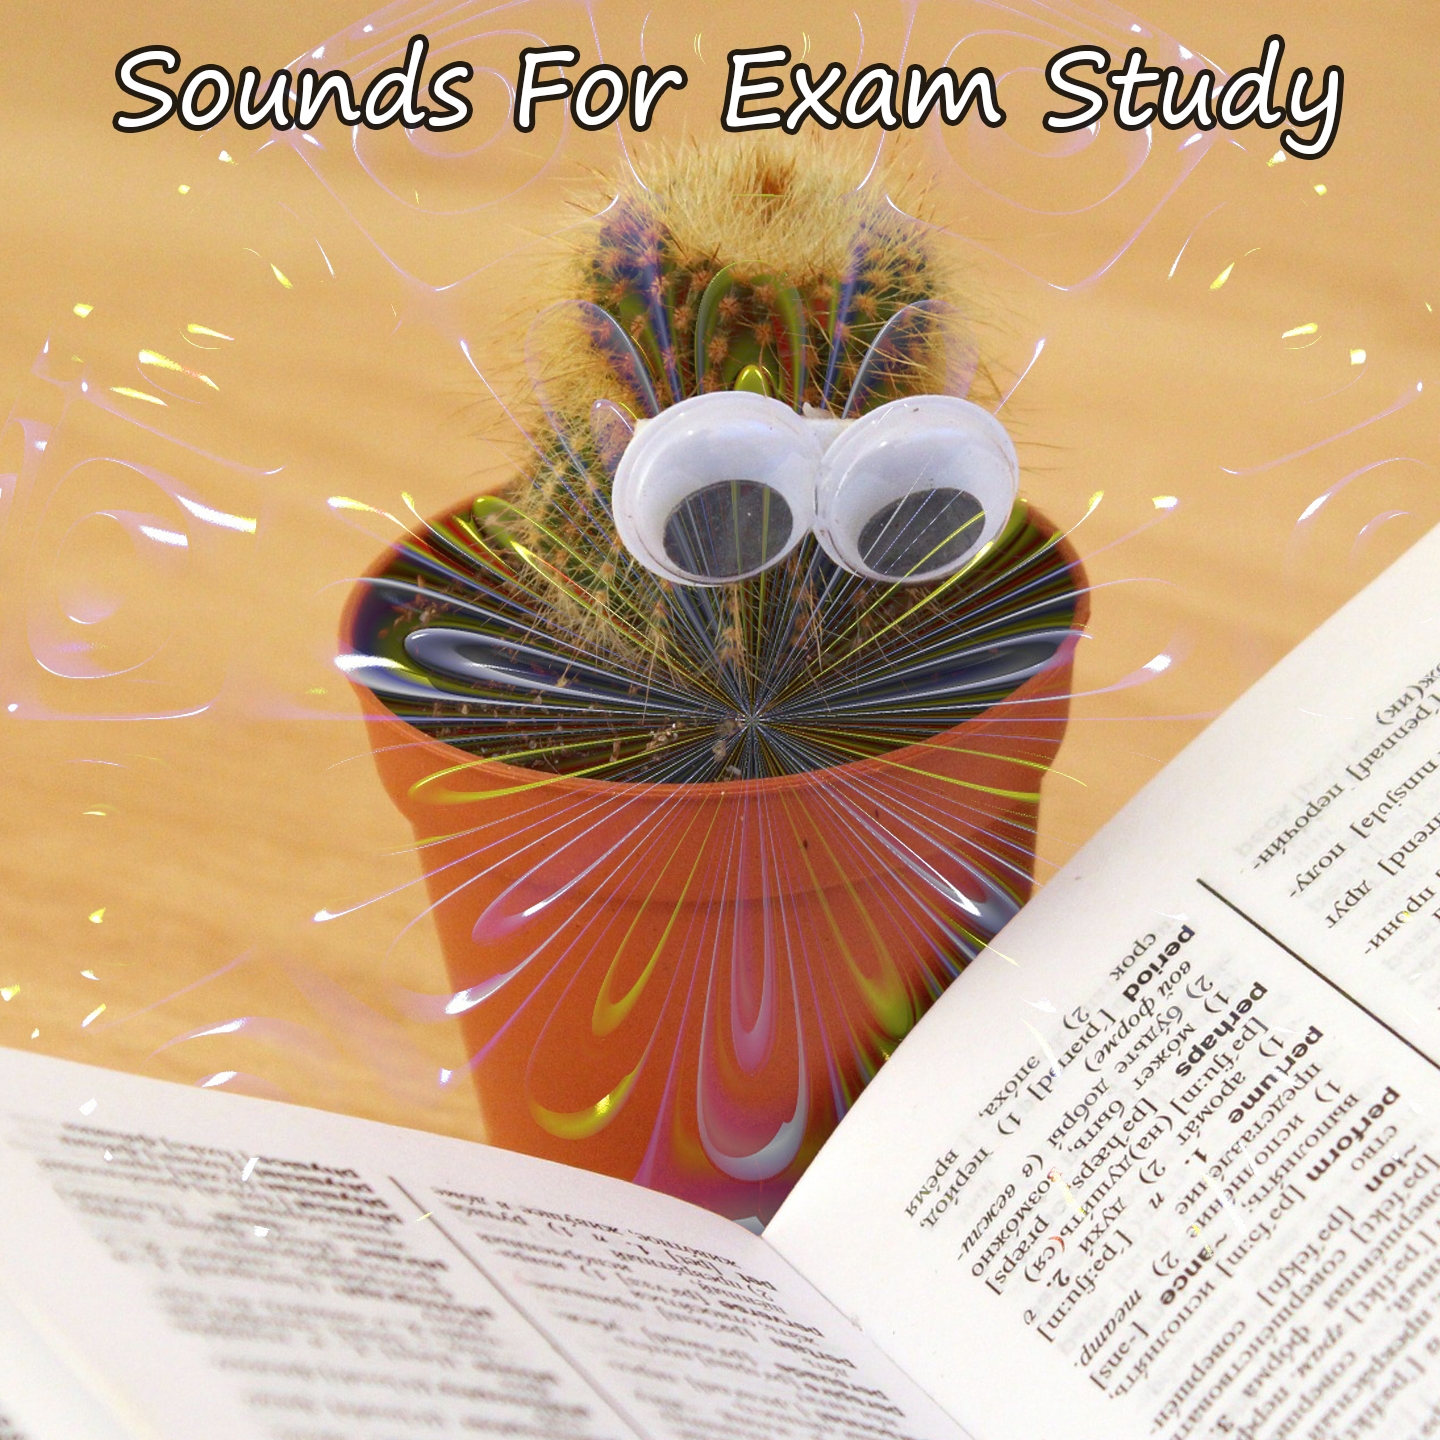 Sounds For Exam Study